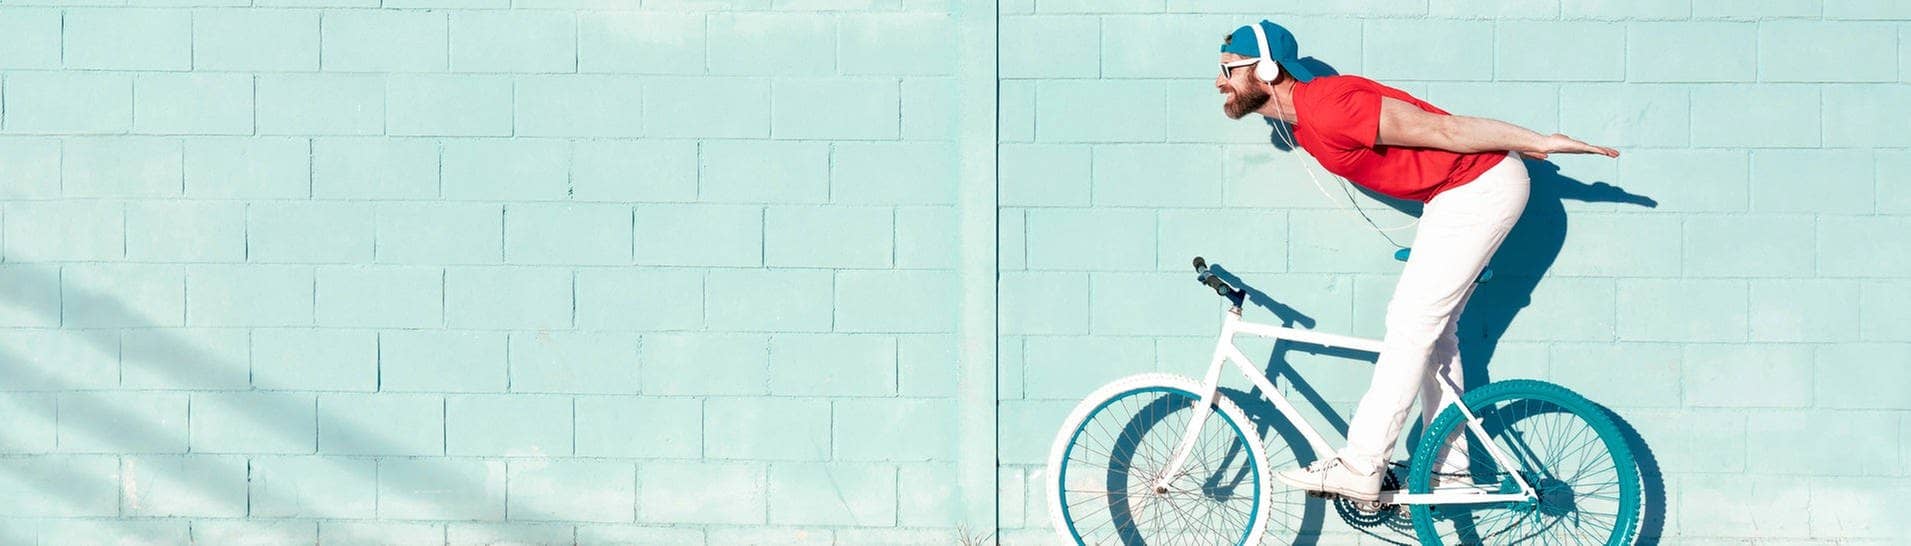 Ein Mann mit Kopfhörern auf einem Fahrrad – ob das legal ist?